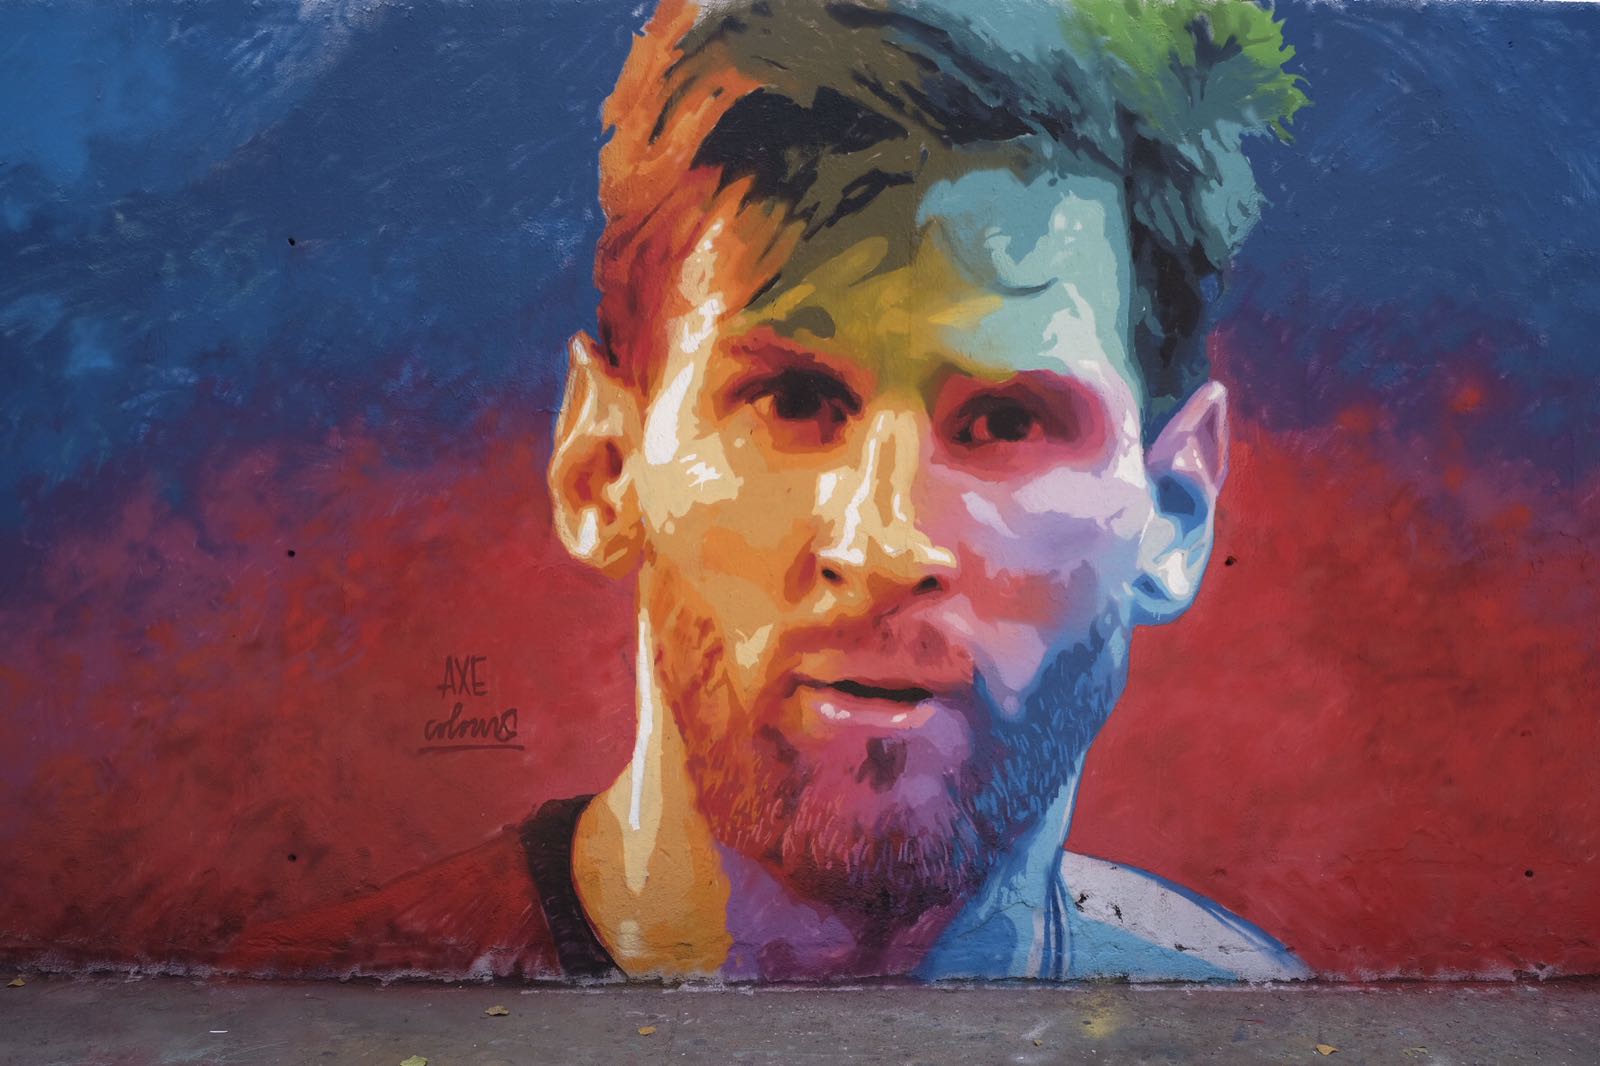 Desapareix el ‘graffiti’ de Leo Messi a Barcelona